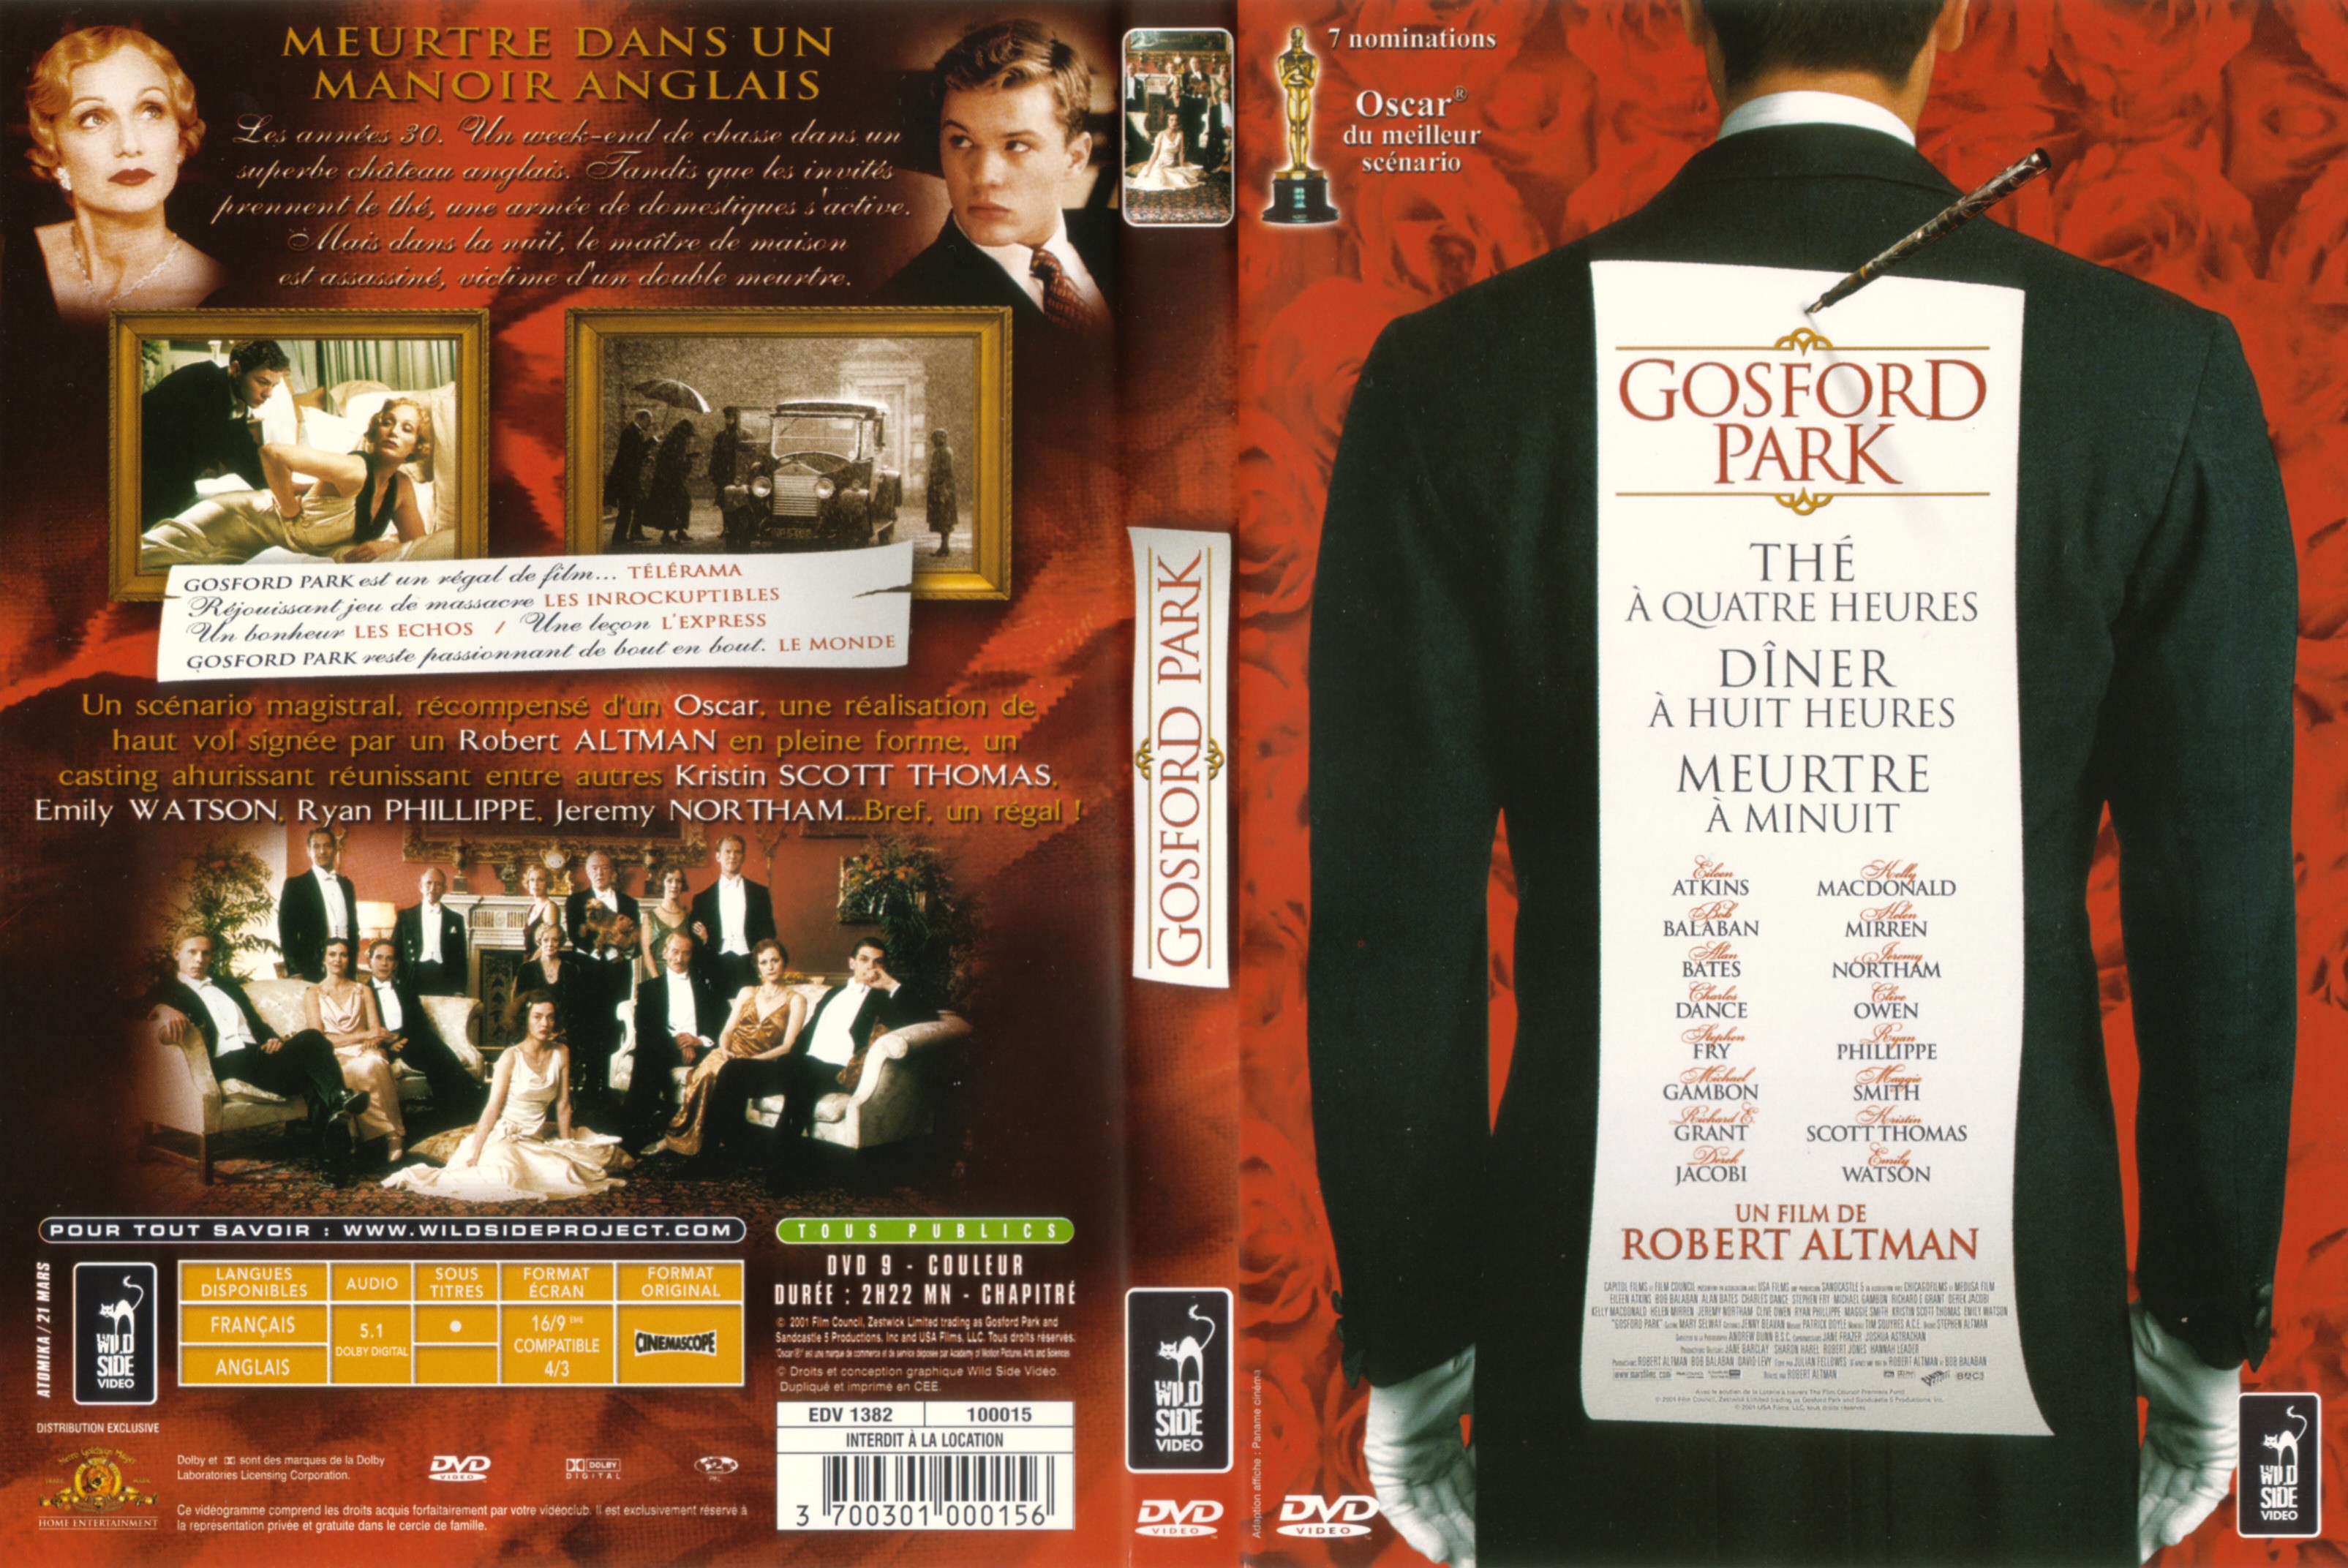 Jaquette DVD Gosford park v2